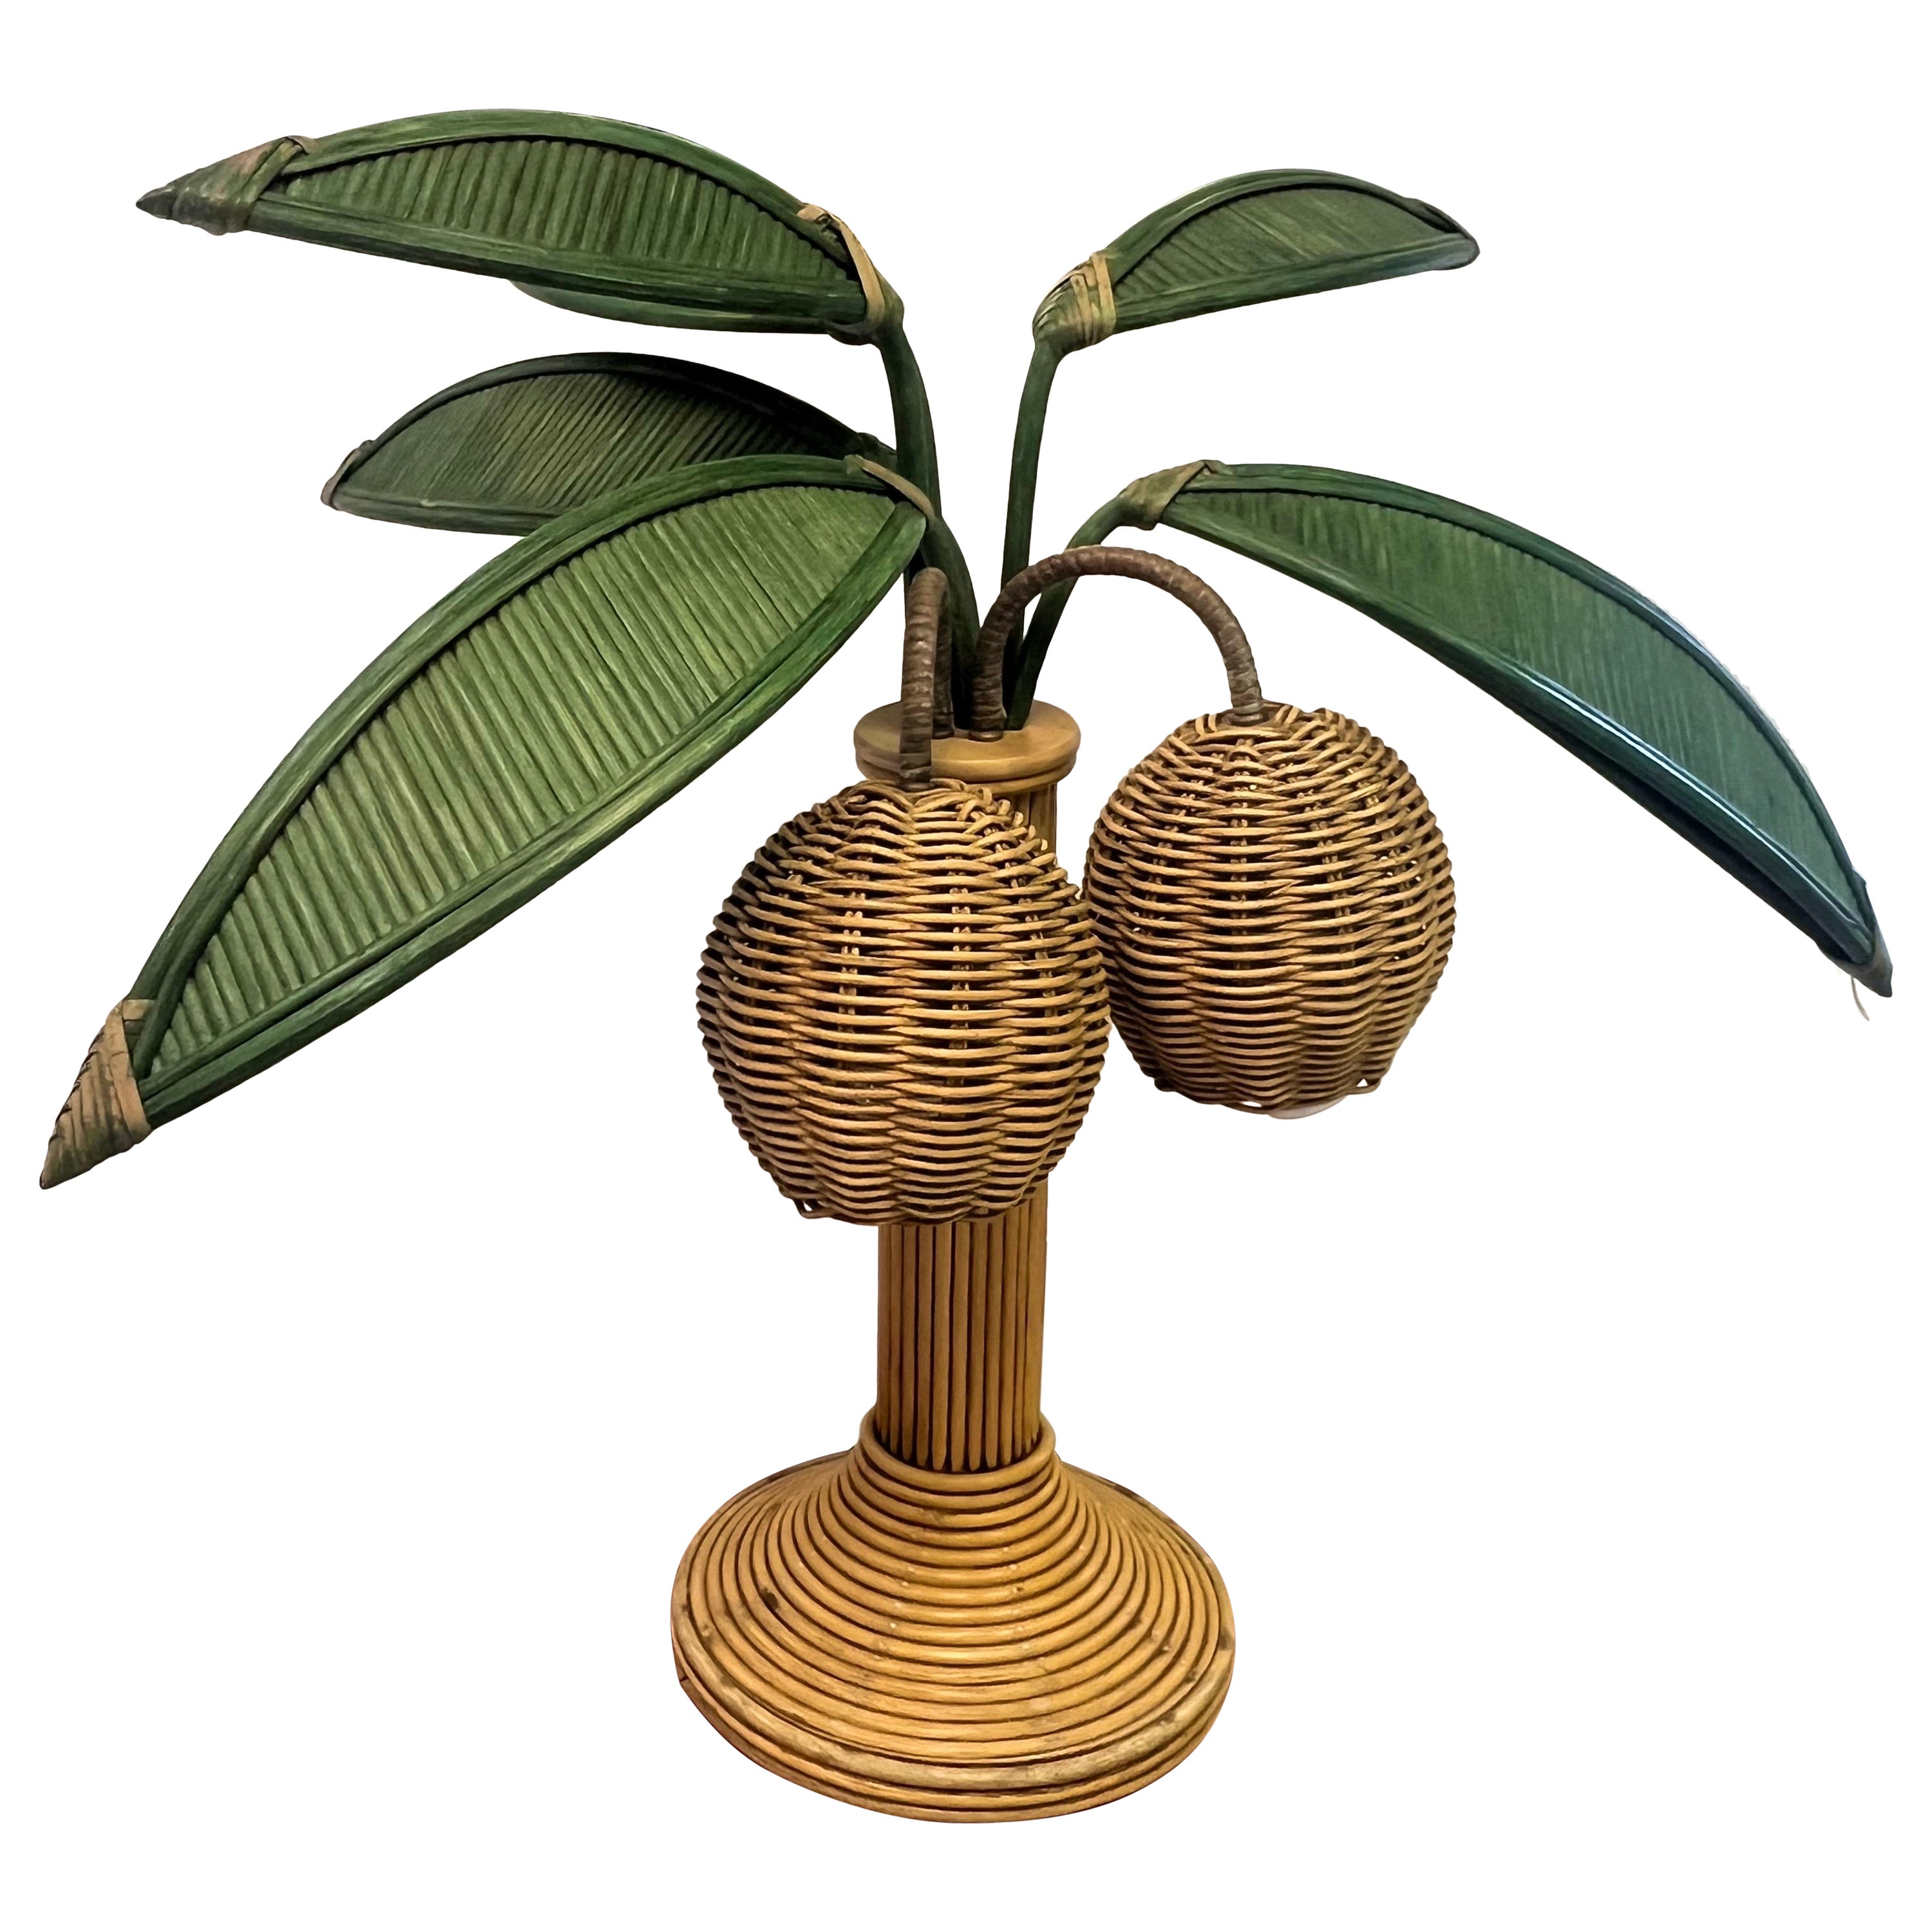 Mario Lopez Torres zugeschriebene Palm Tree Tischlampe